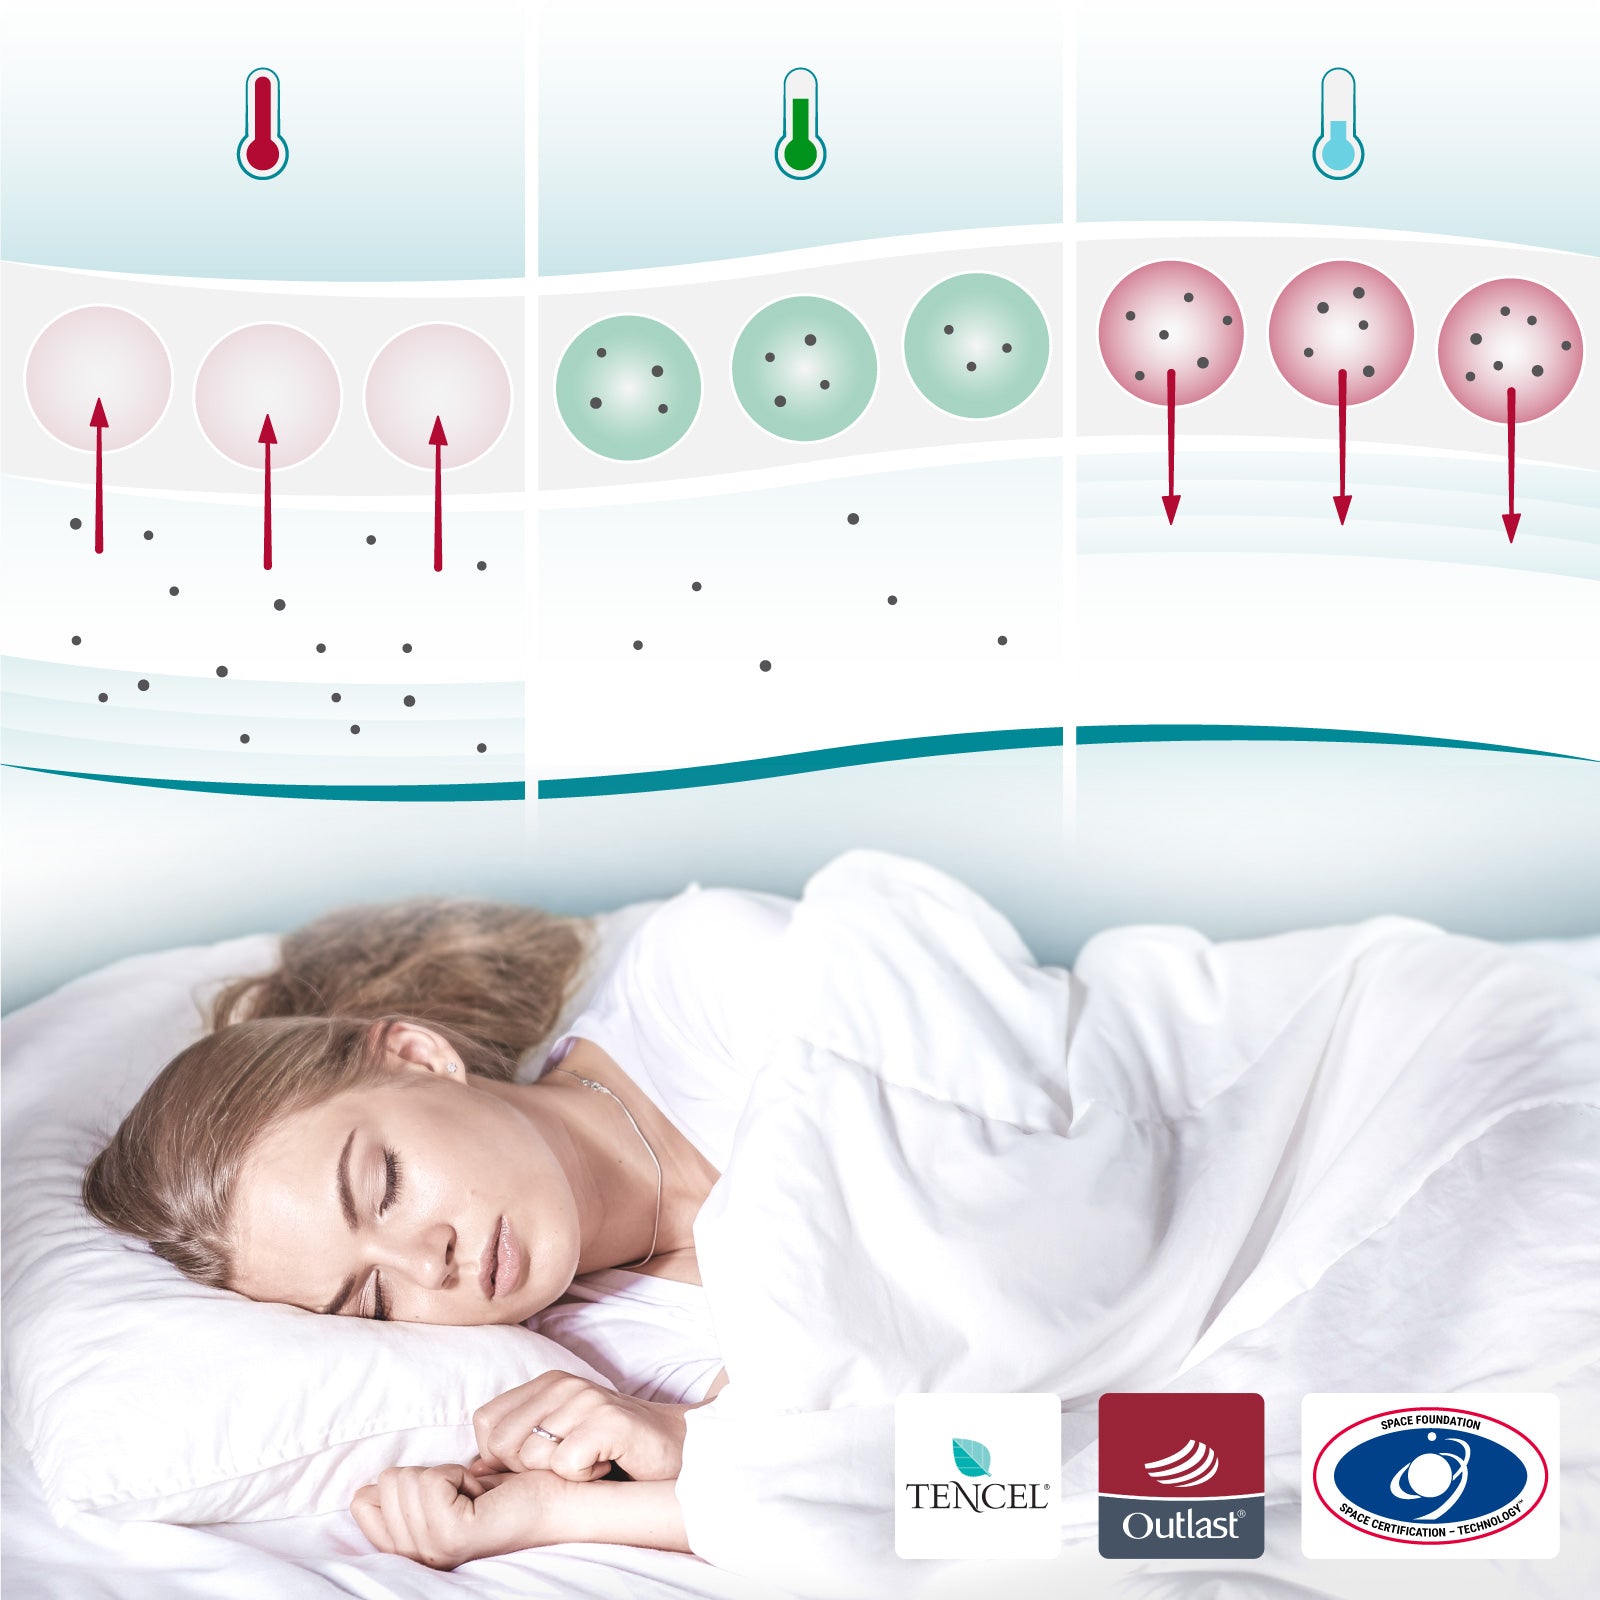 besser Einfach (1000g-1200g) – Sleepcool schlafen COOL.XPRESSION - Weni Bettdecke Temperaturregulierende - –